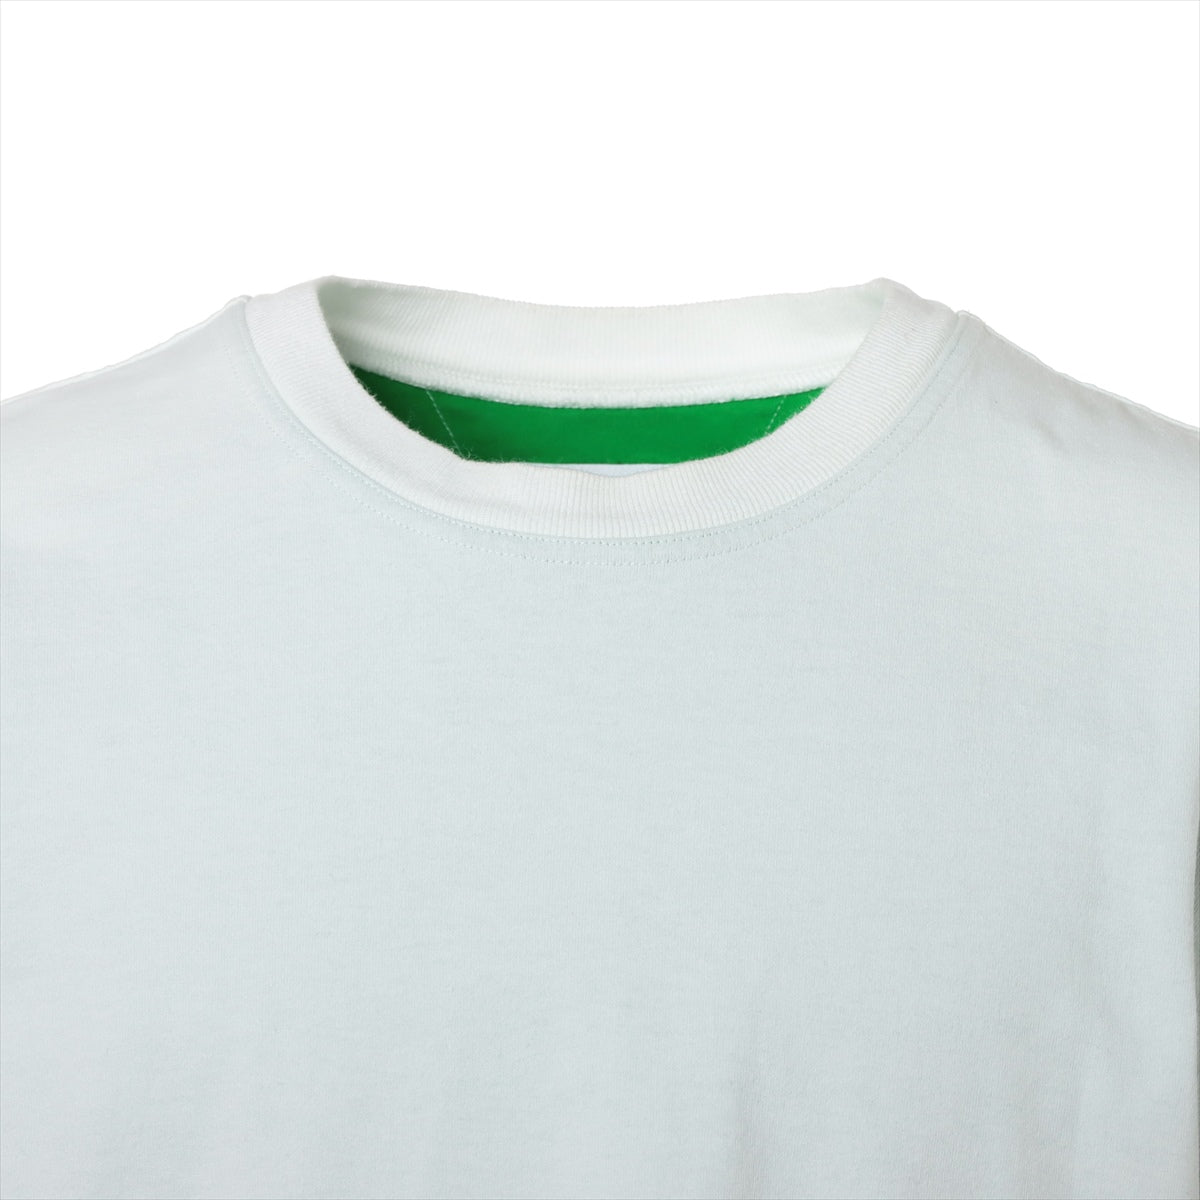 ボッテガヴェネタ 2022 コットン Tシャツ M メンズ ホワイト×グリーン